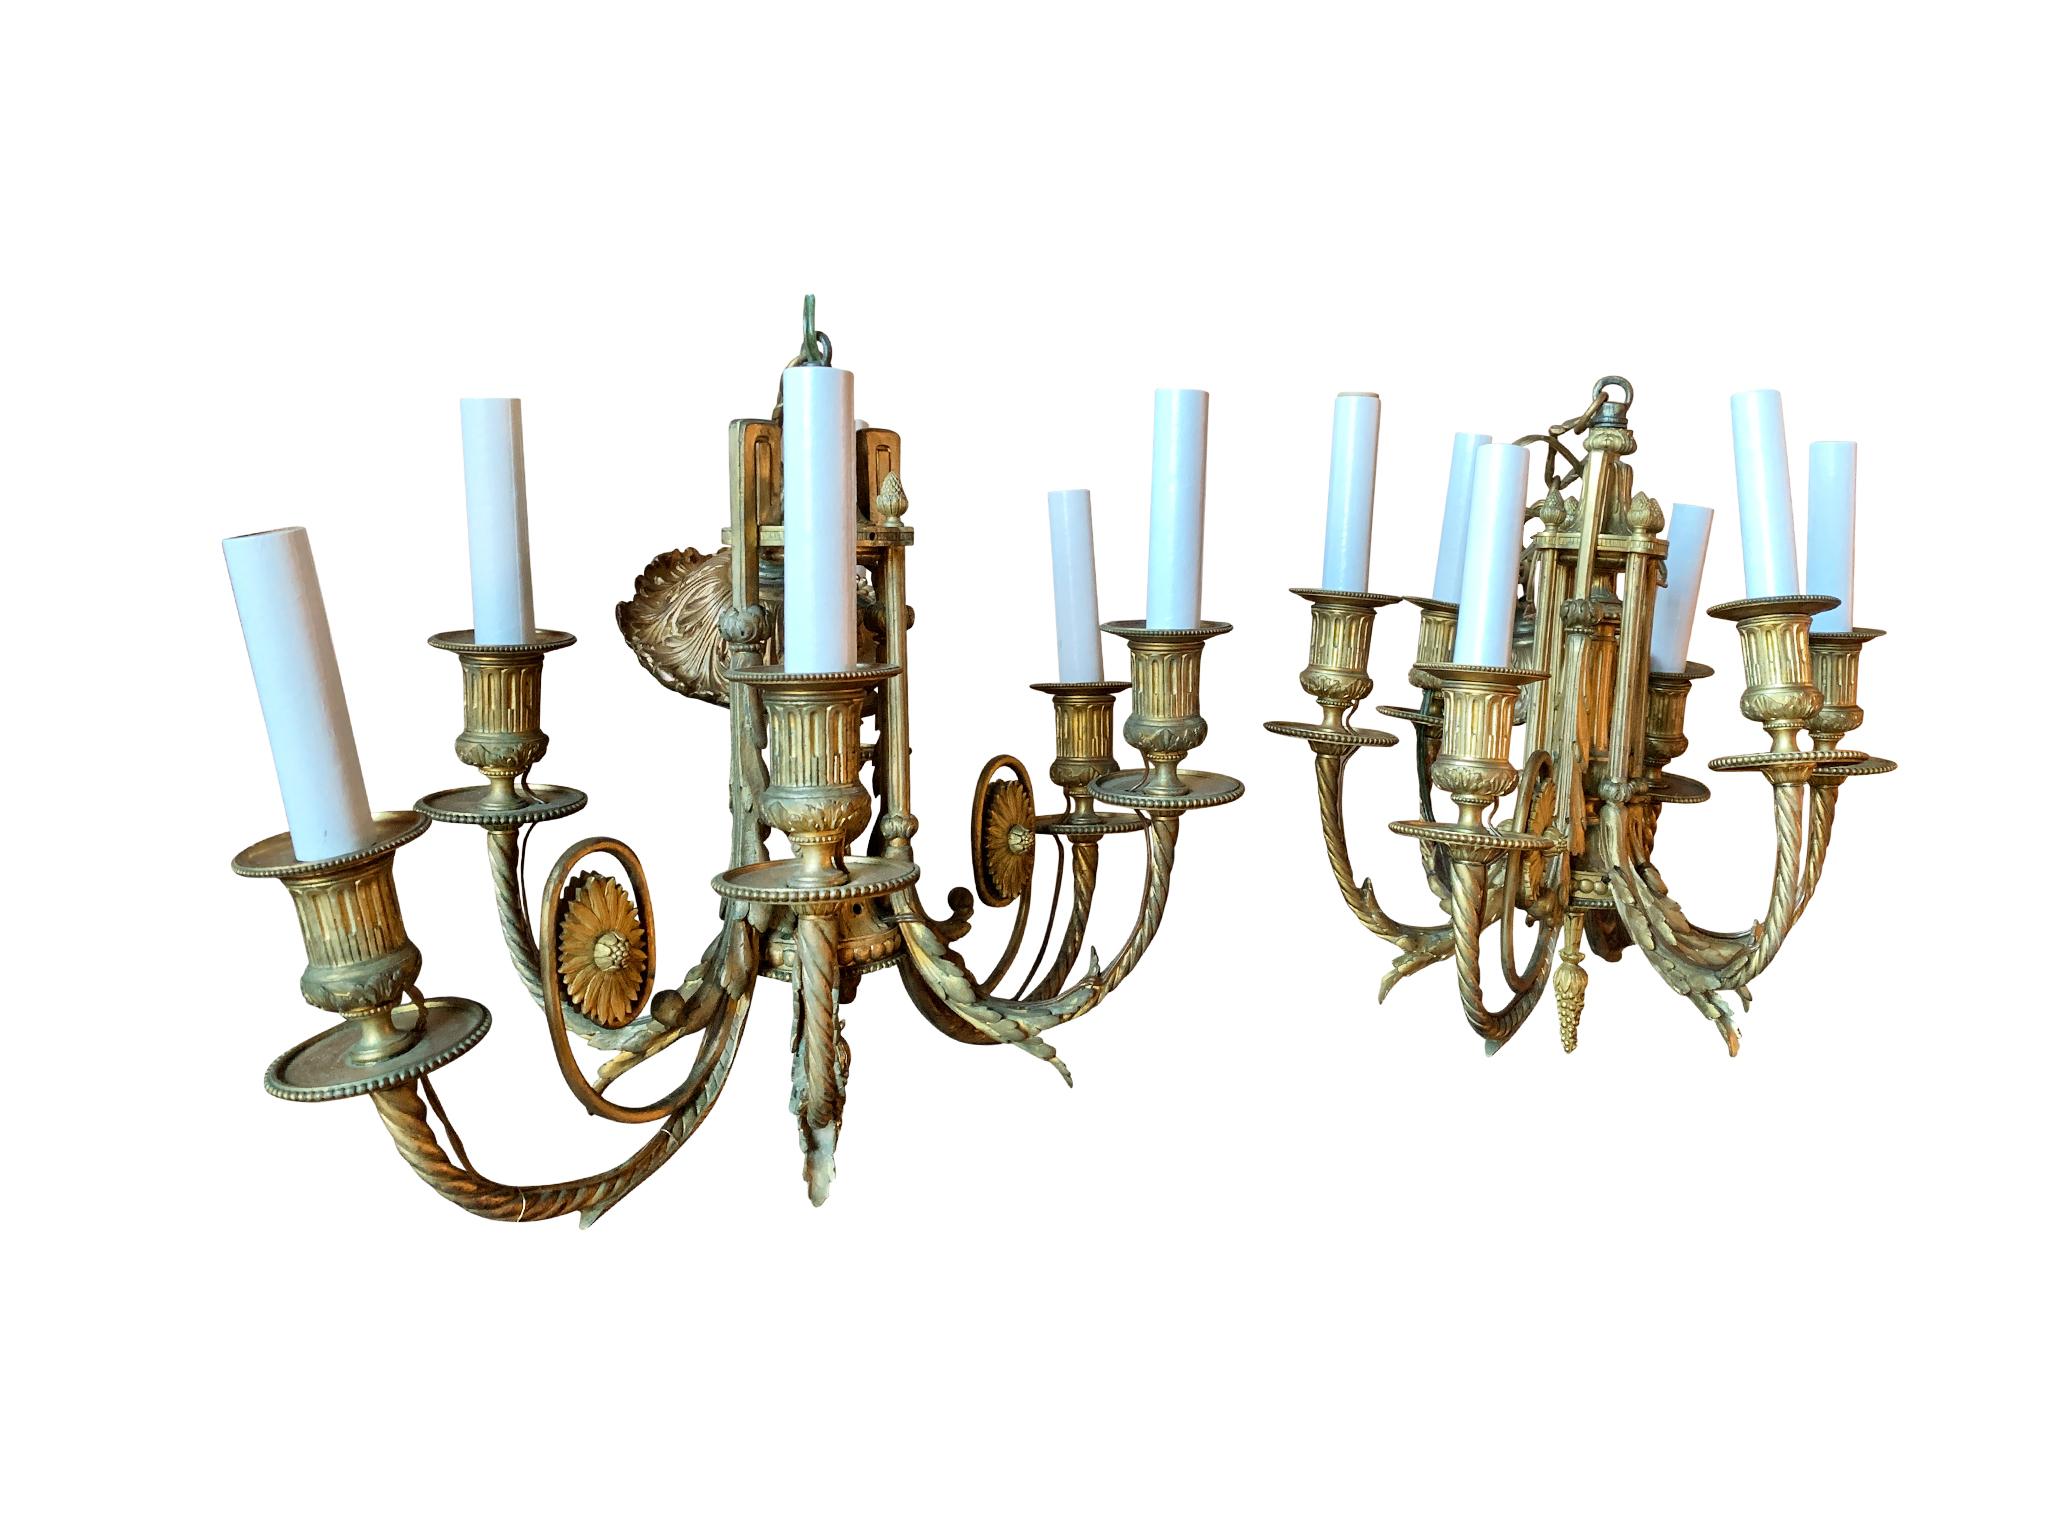 Paire de lustres anciens français en bronze doré de style néoclassique, fabriqués au début du 20e siècle. Les motifs floraux et les feuilles sont de magnifiques éléments décoratifs. Chaque lustre comporte 6 douilles d'ampoules de style chandelier.